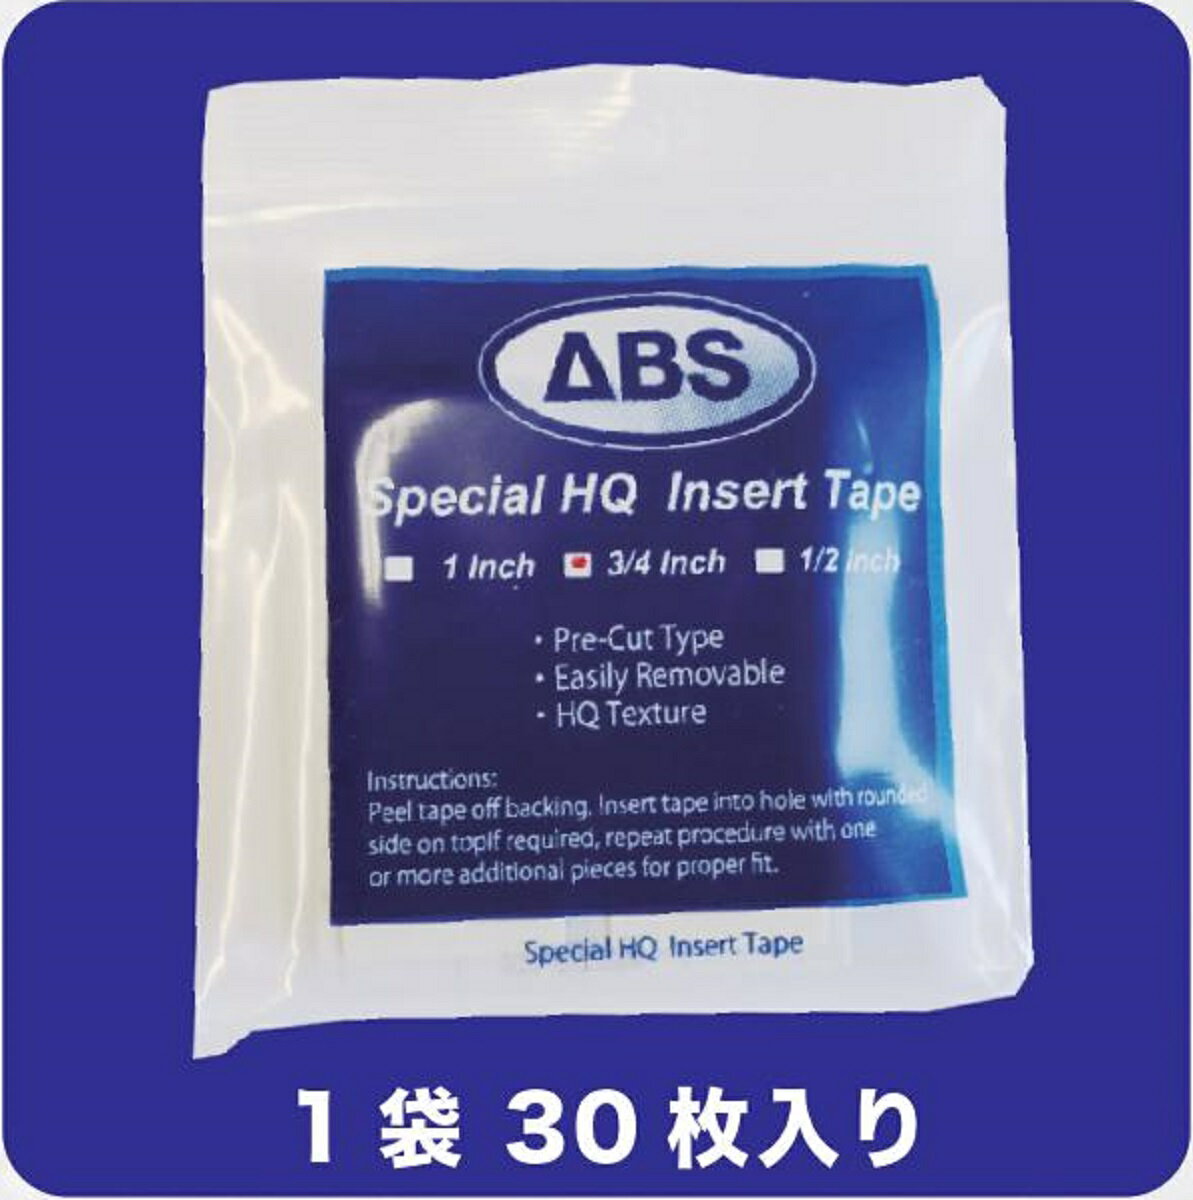 ABS スペシャル ハイクオリティ インサート テープ ボウリング用品 ボーリング グッズ